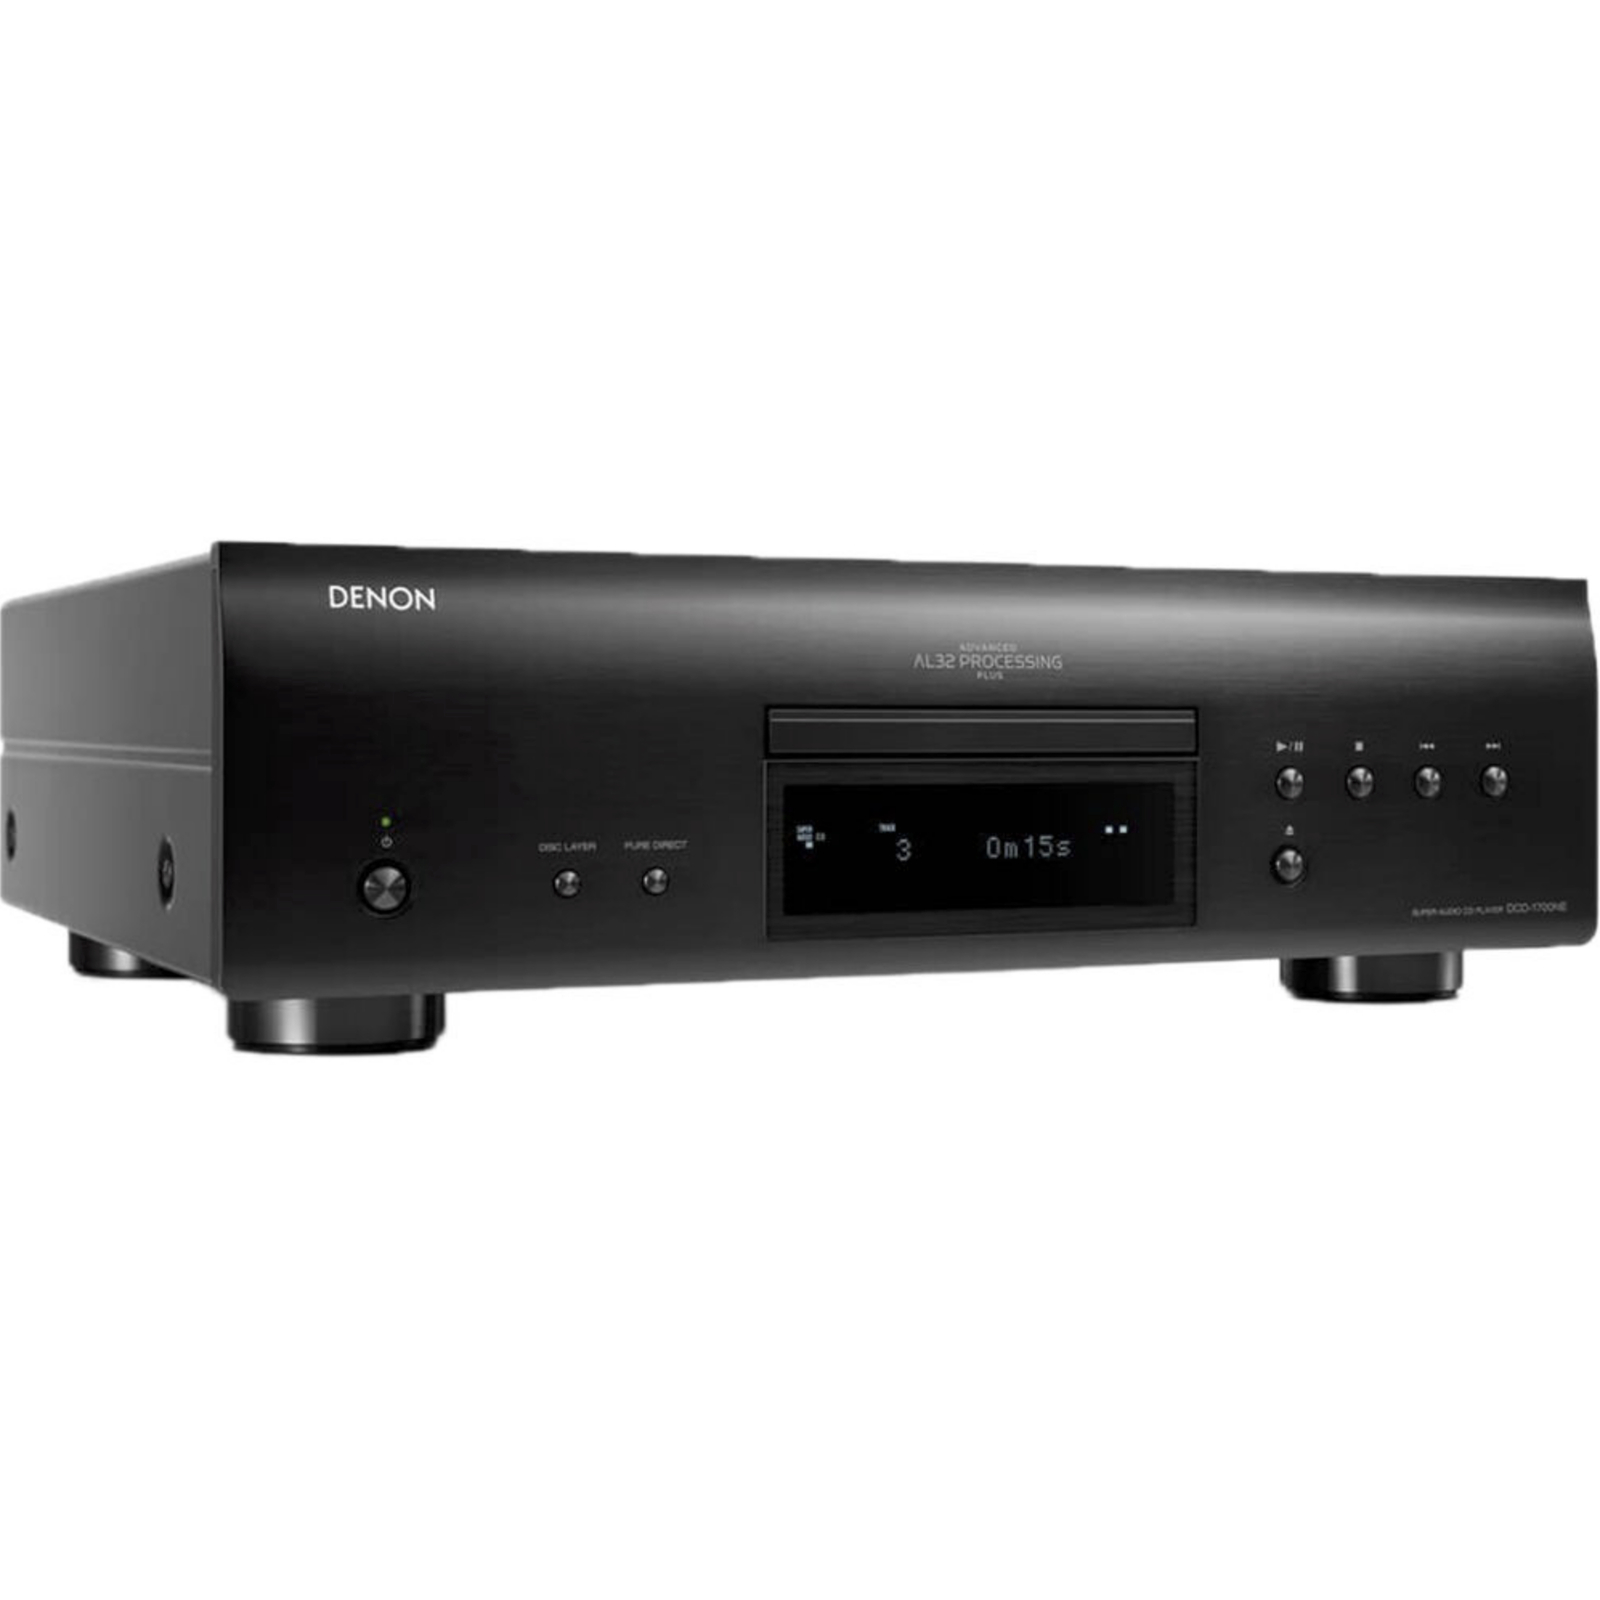 Denon DCD-1700NE Super Audio CD Player com AL32 Processing Plus ( Preto -120v )